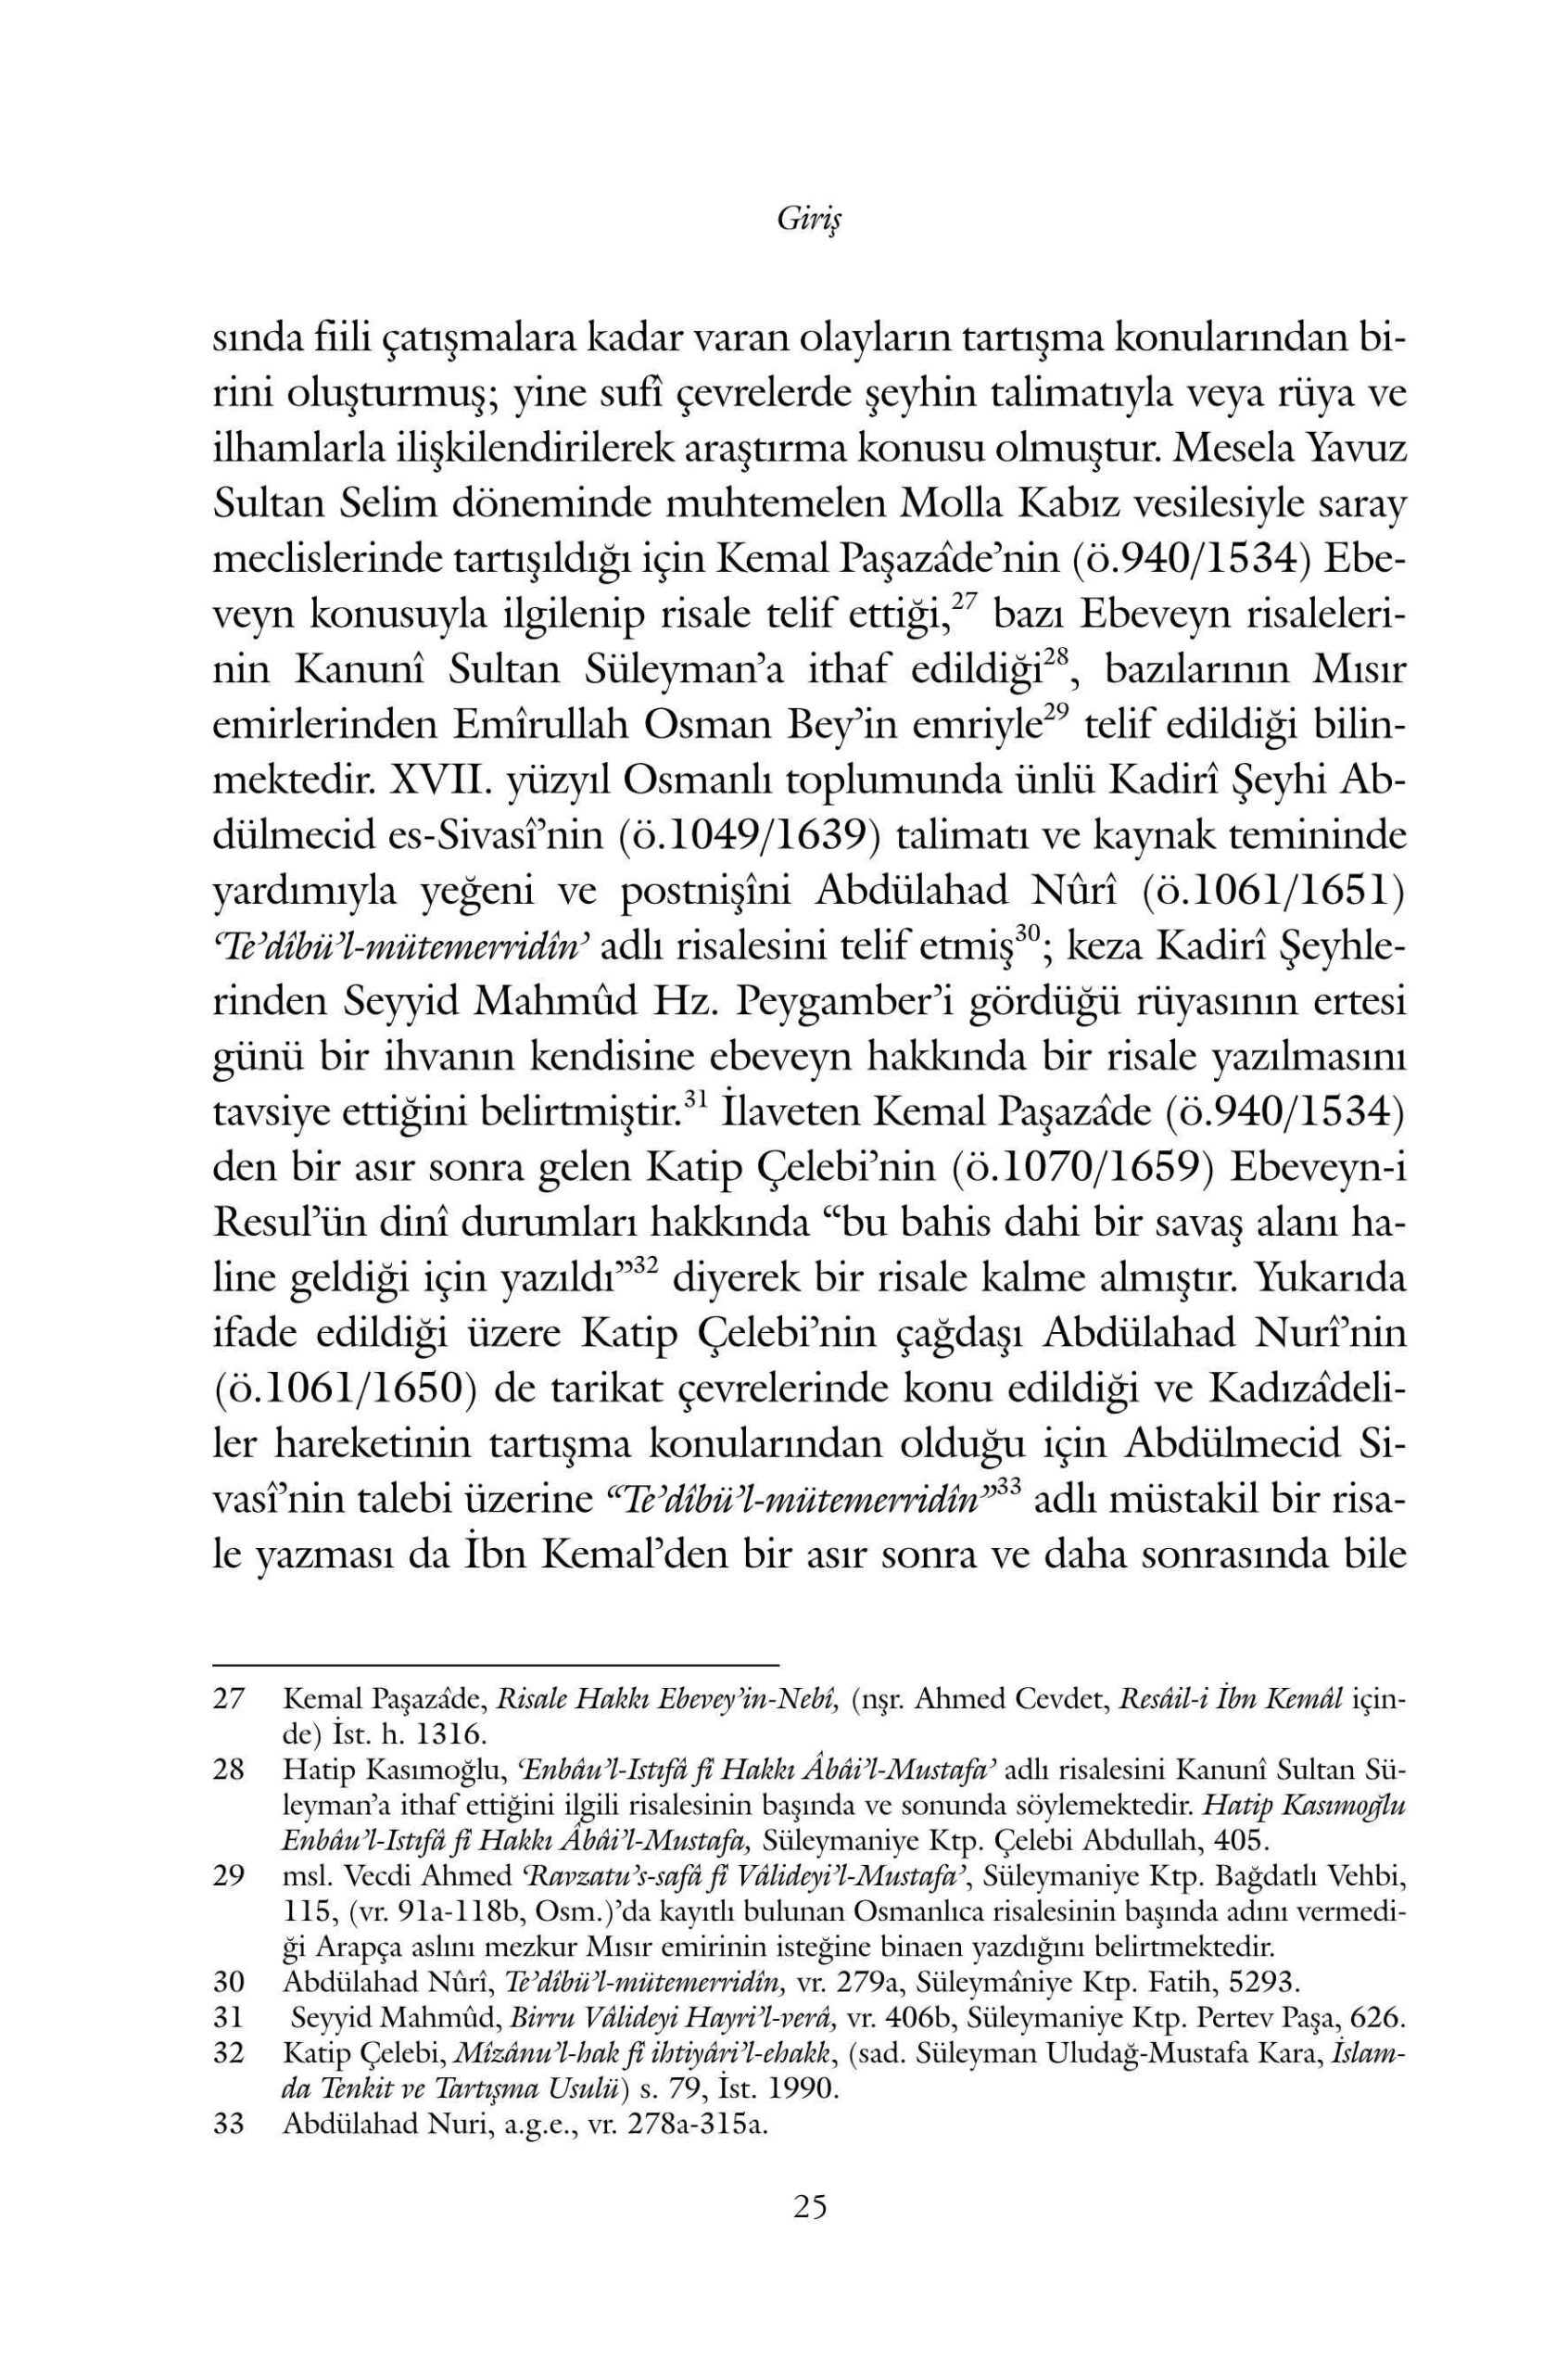 Mustafa Akcay - Hz Peygamberin Anne Babasinin Dini Konumu ve Ebeveyn-i Resul Risaleleri - IsikAkademiY.pdf, 309-Sayfa 